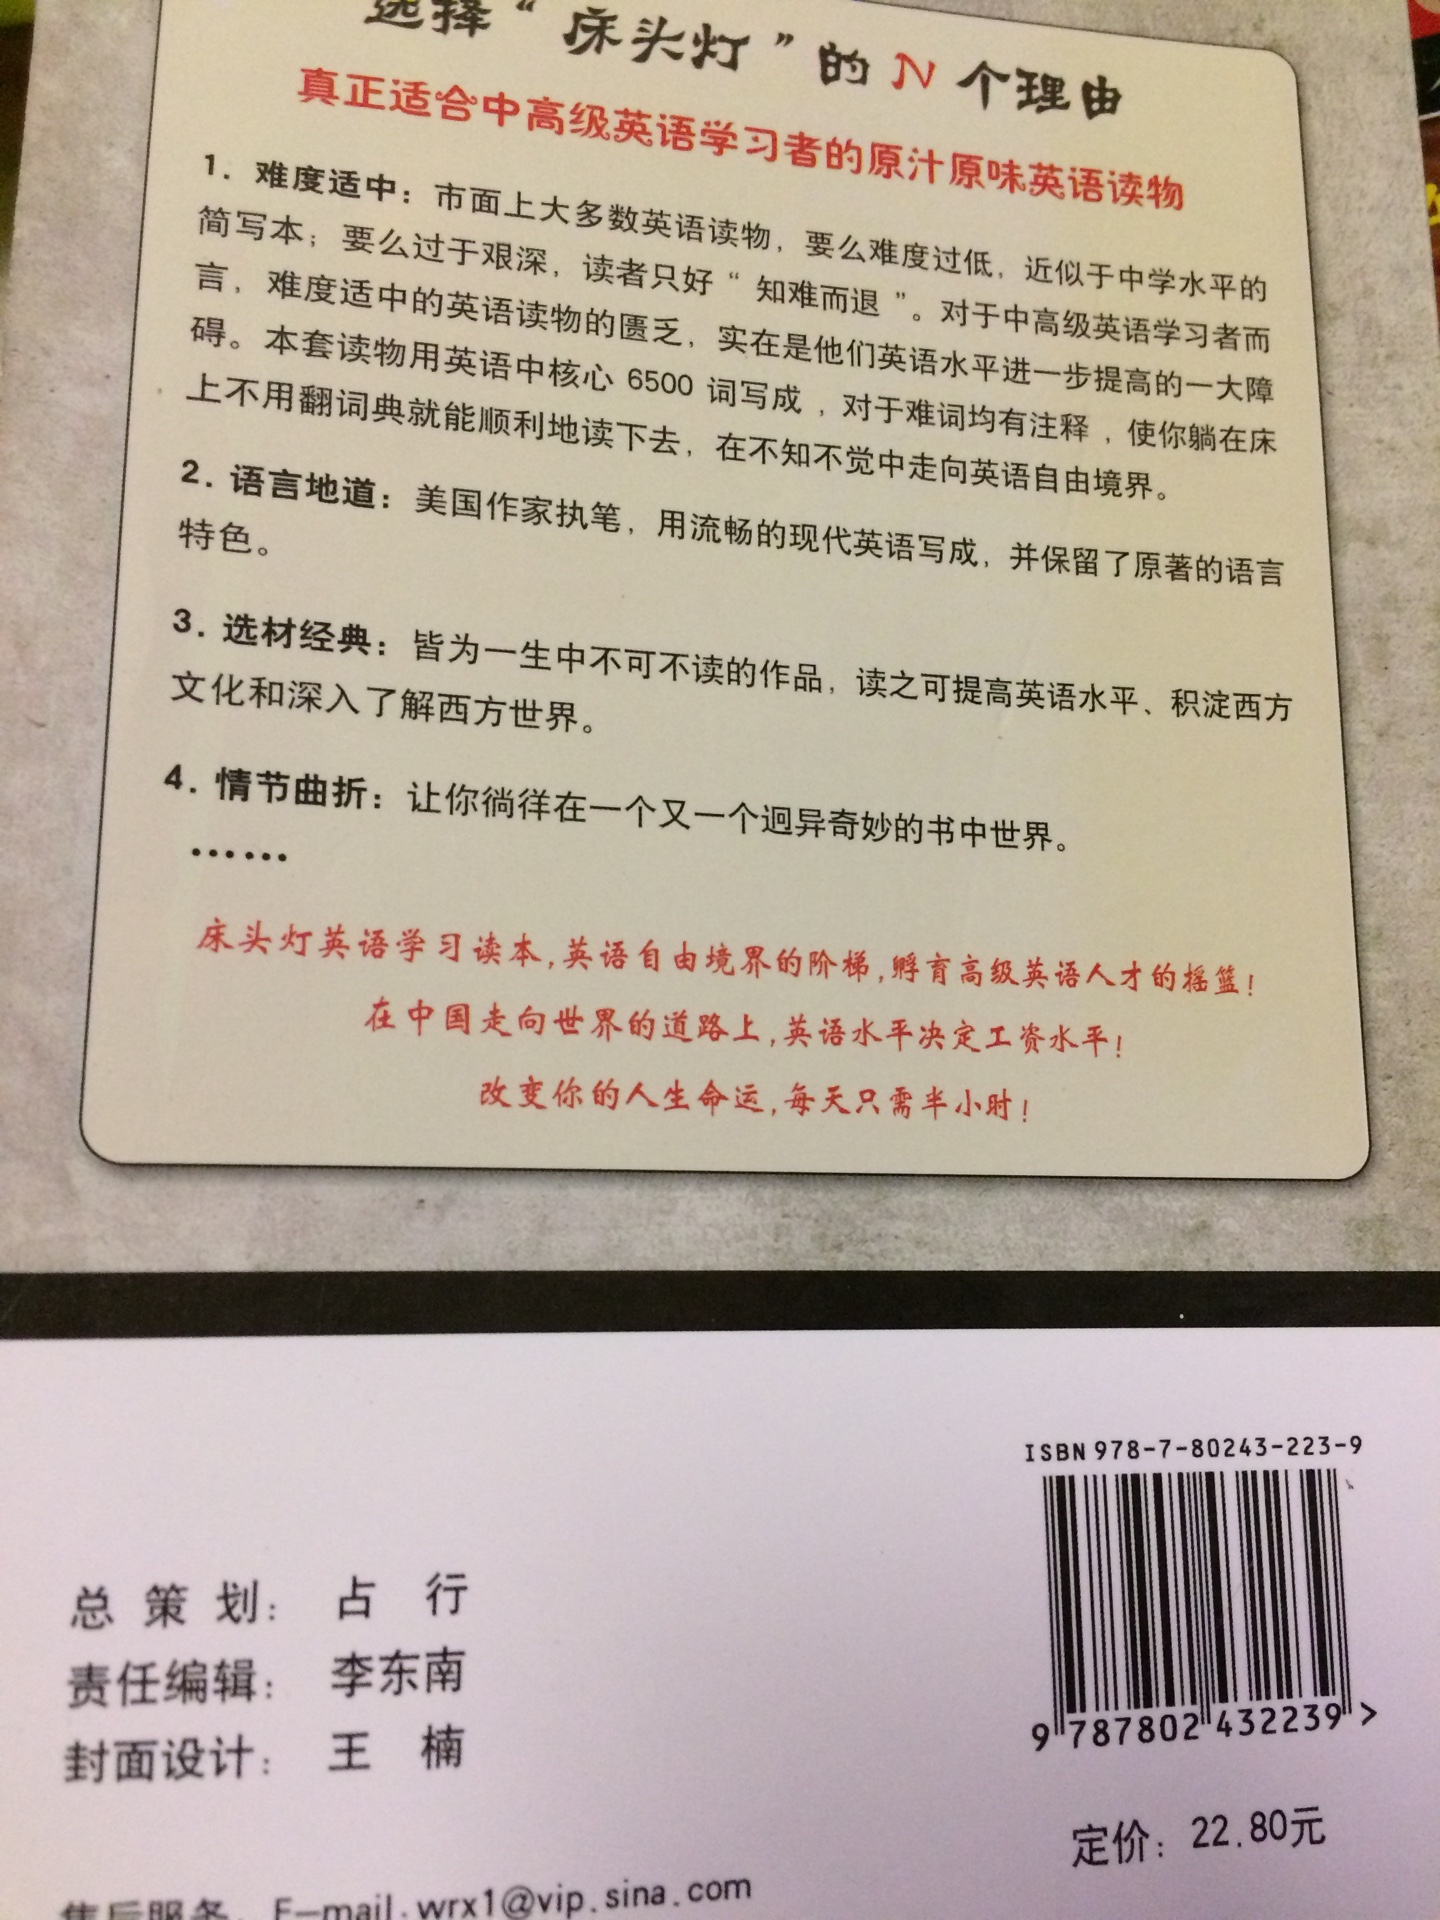 无塑封32开，中英双语，内容丰富，值得推荐。